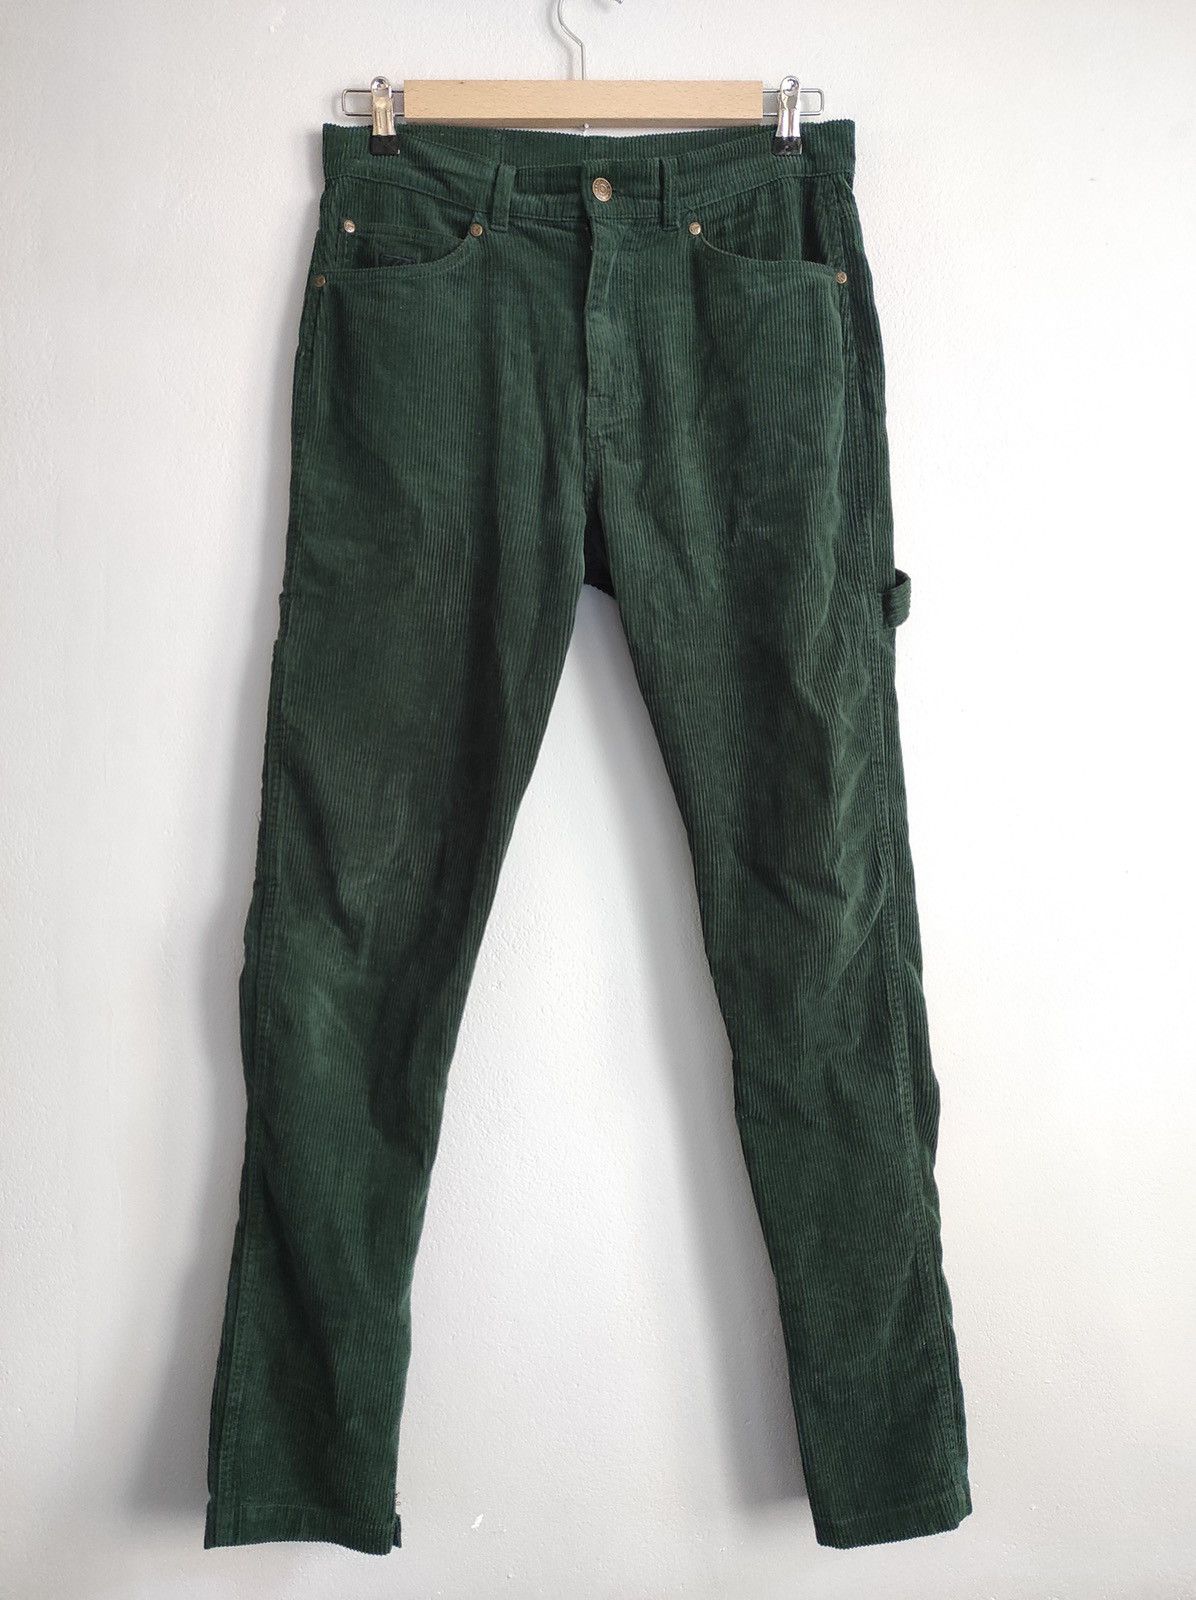 Karl Kani Karl Kani green cargo corduroy pants | Grailed